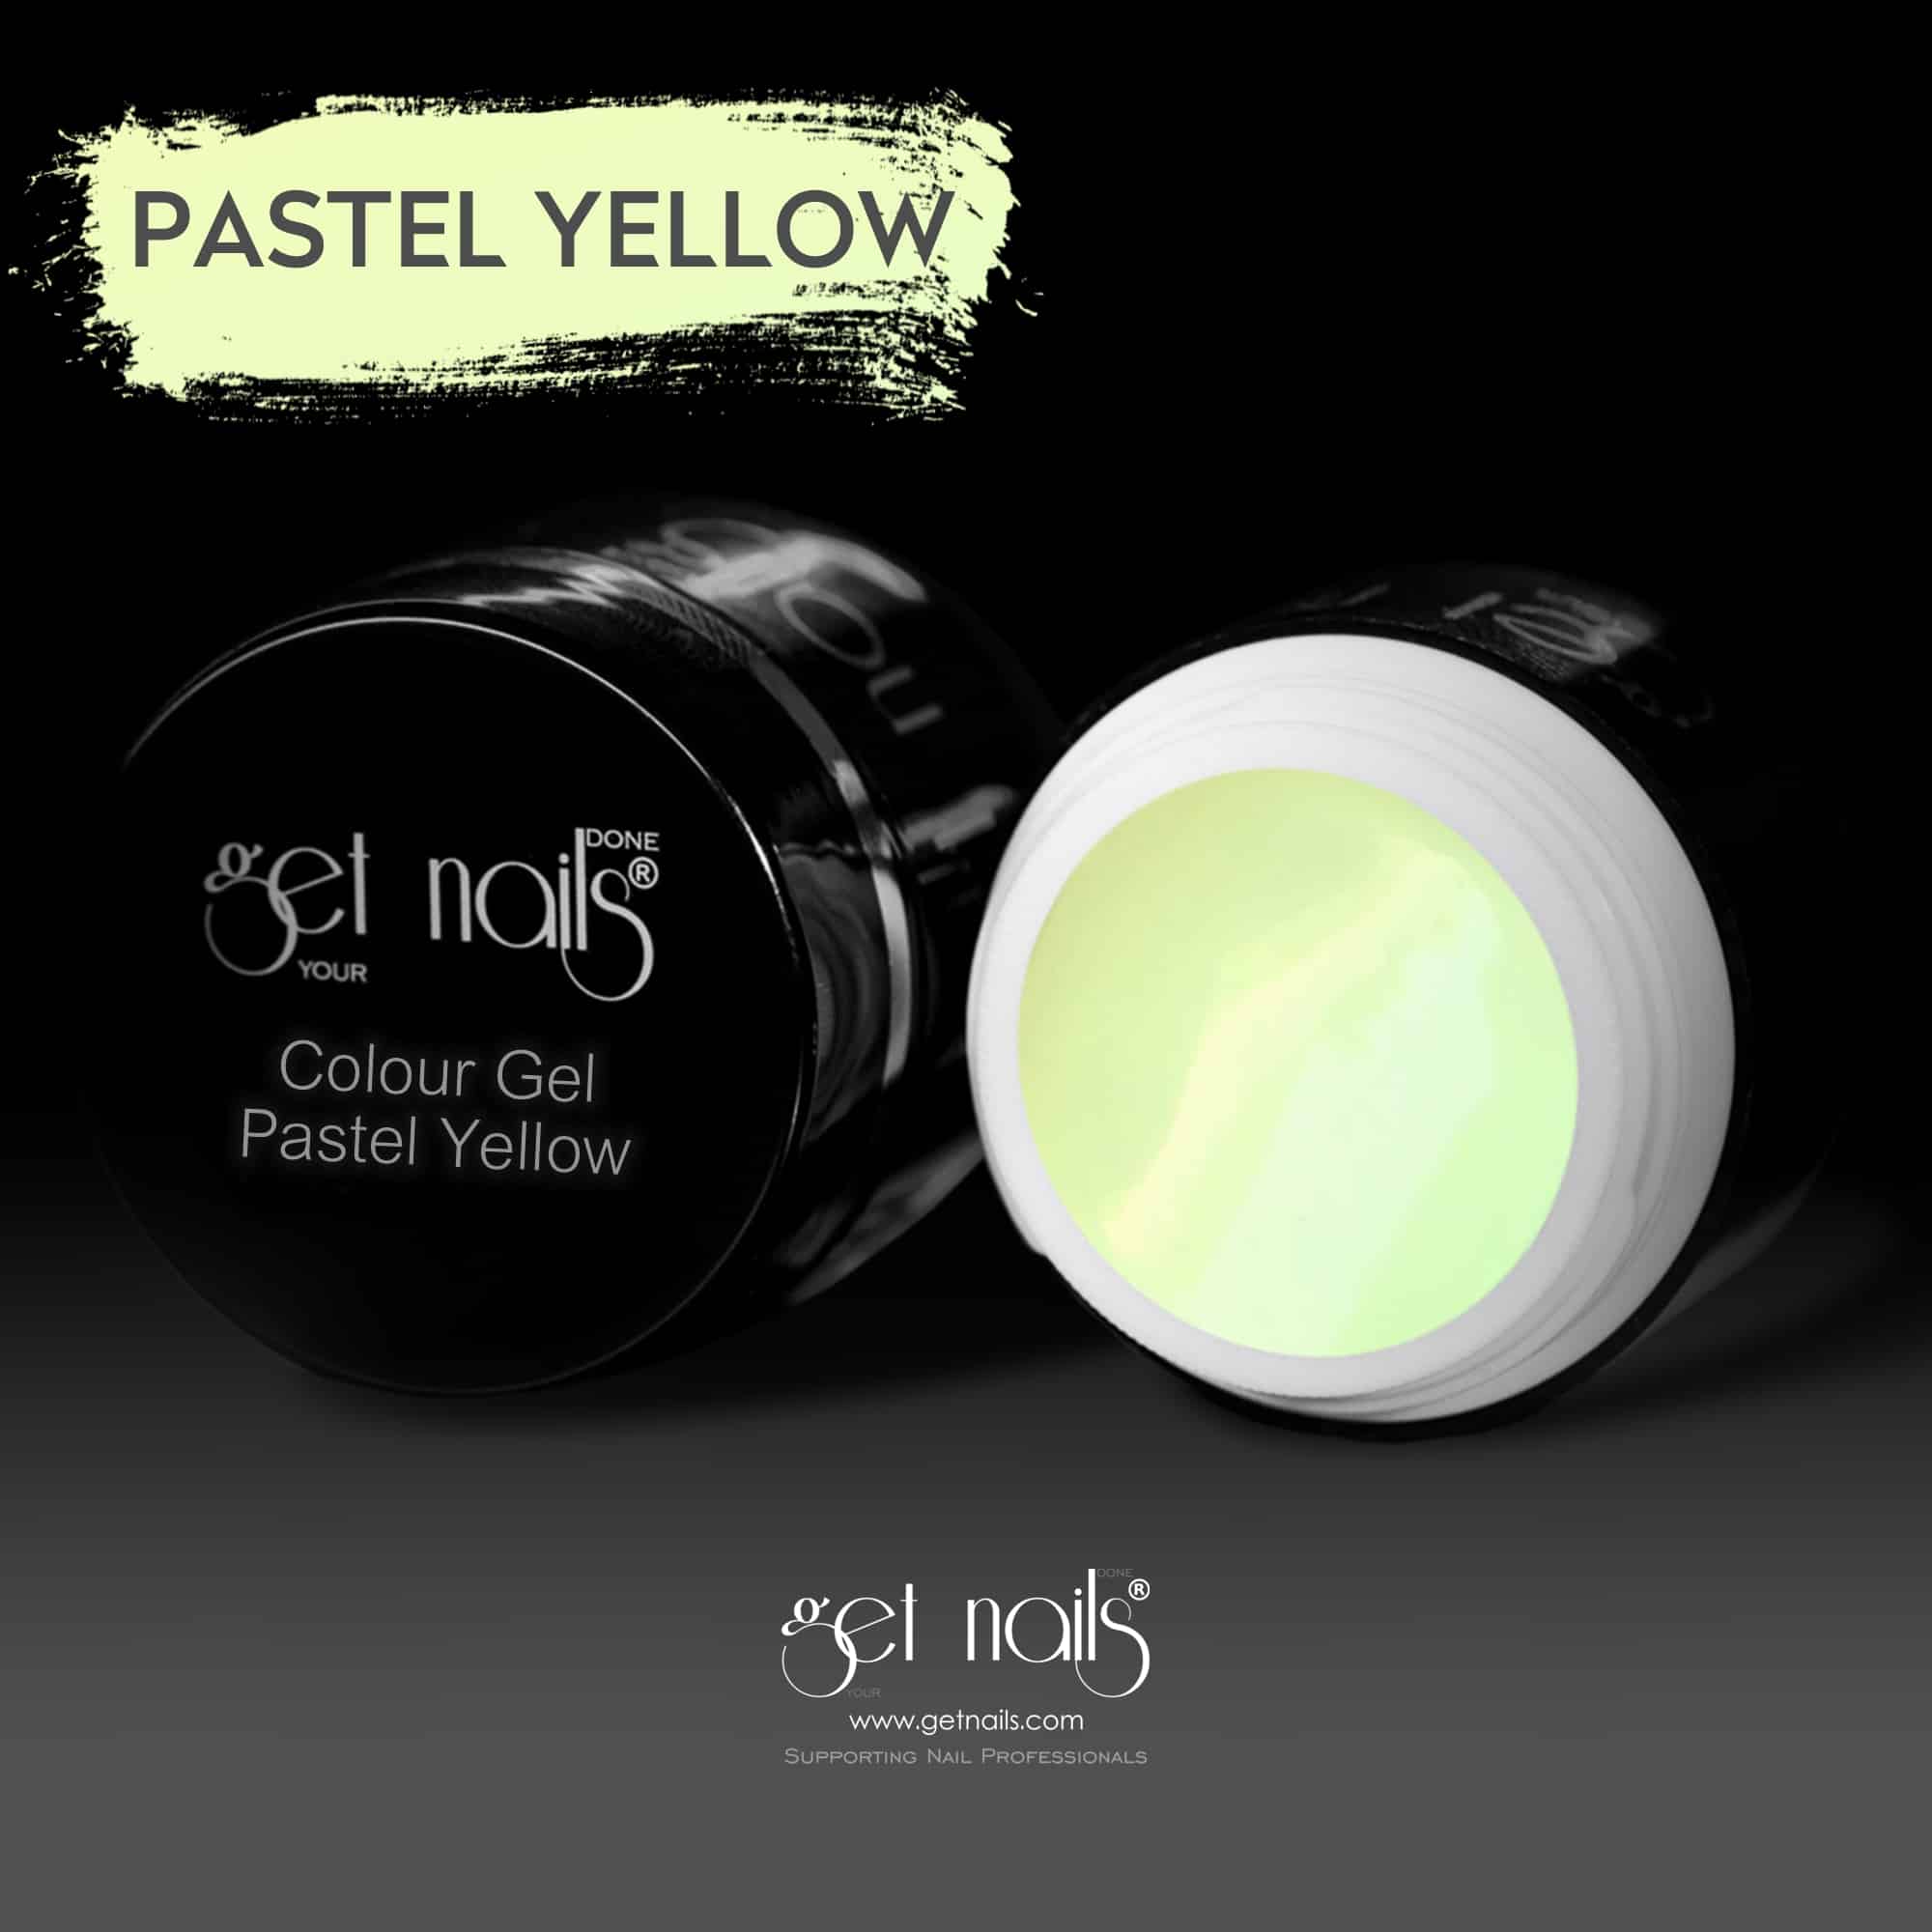 Get Nails Austria - Colour Gel Pastel Yellow 5g